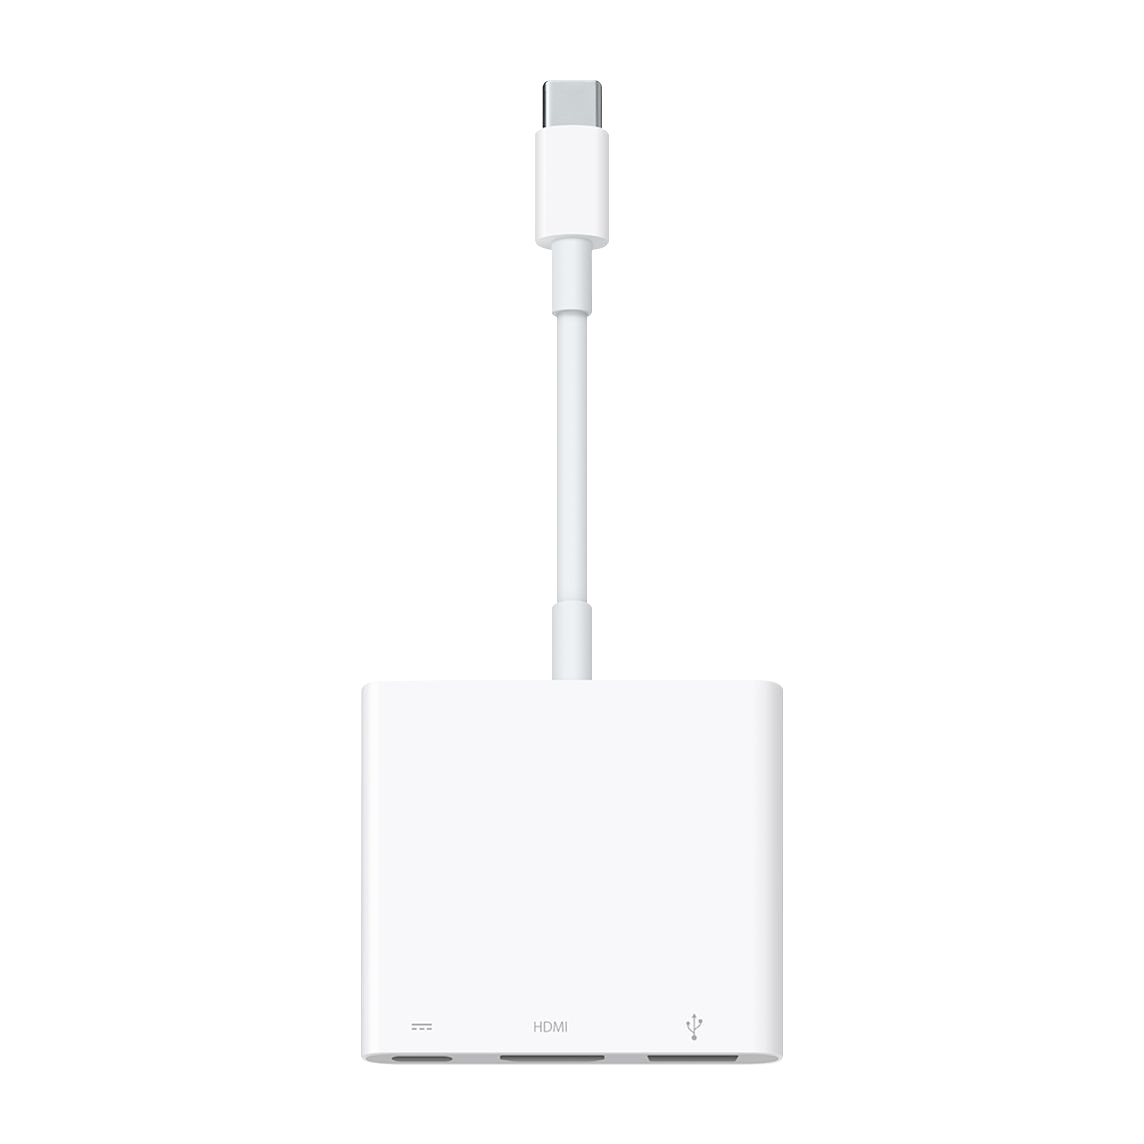 El adaptador multipuerto de USB-C a AV digital te permite conectar tu Mac o iPad con puerto USB-C a un monitor HDMI, además de un dispositivo USB estándar y un cable de carga USB-C. 